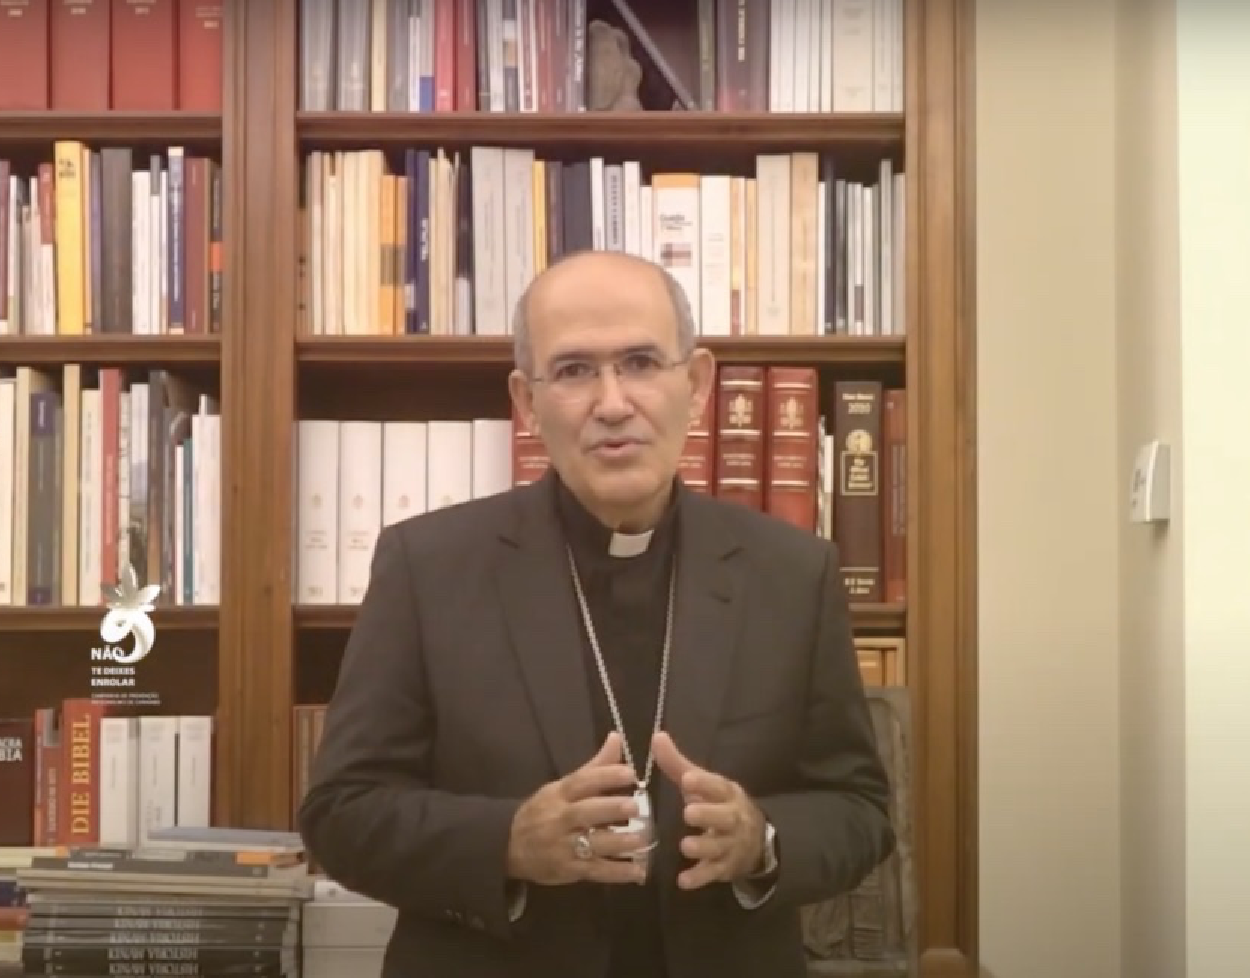 Cardeal D. José Tolentino Mendonça sensibiliza os jovens para os efeitos nefastos da canábis